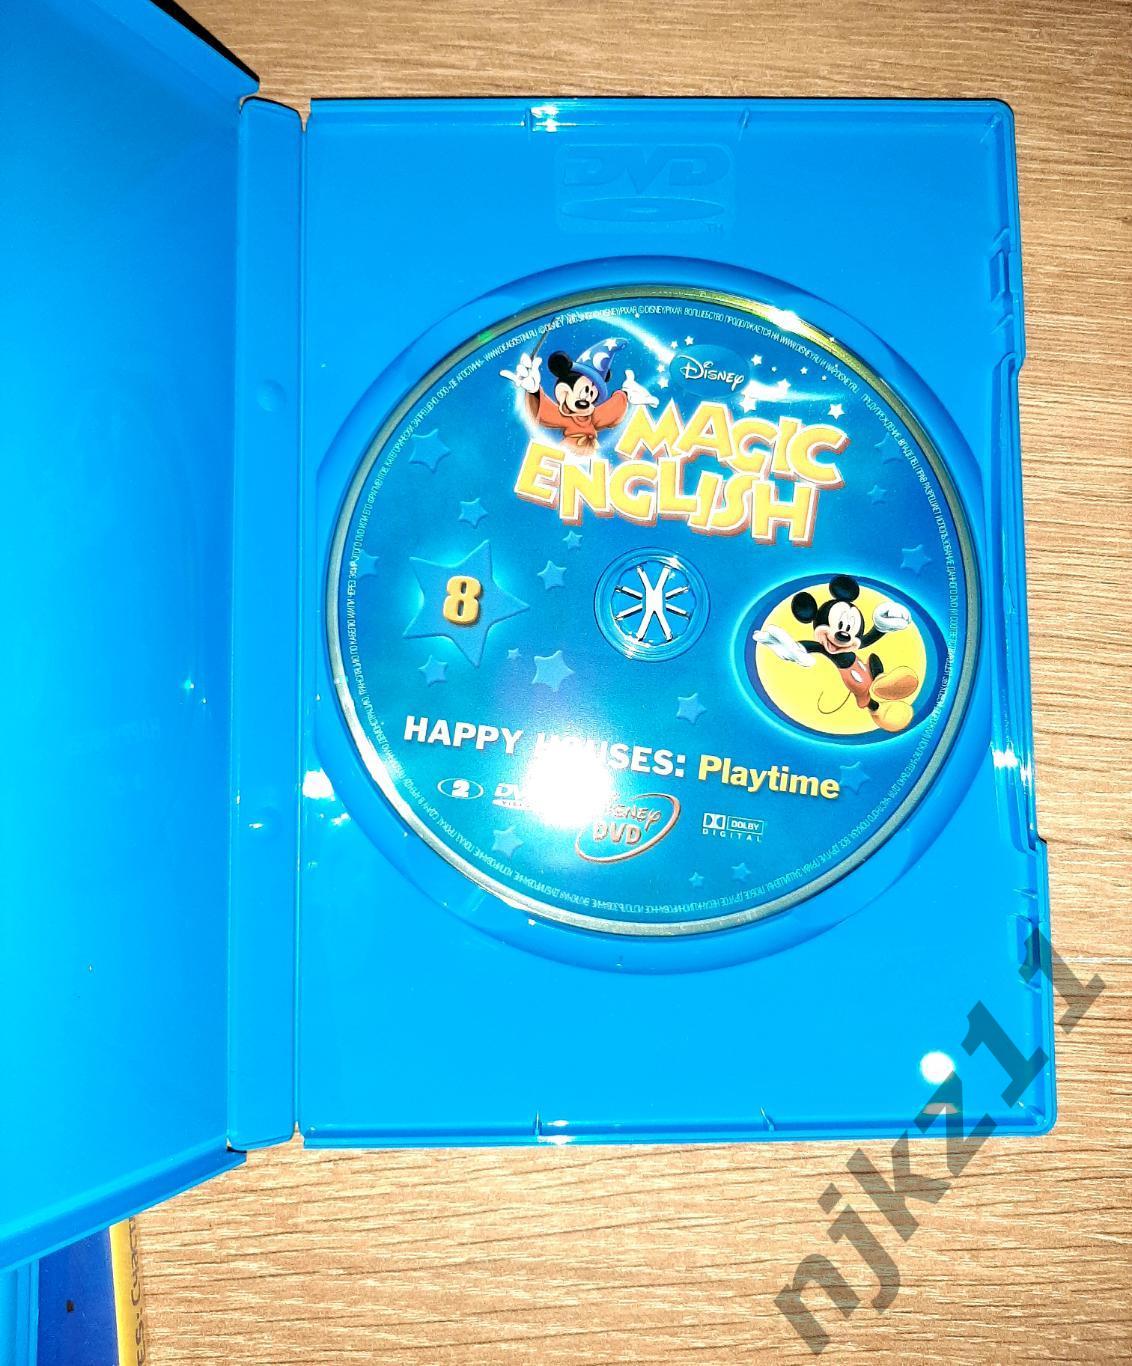 Disney magic english DVD 4 диска для интерактивного обучения 5